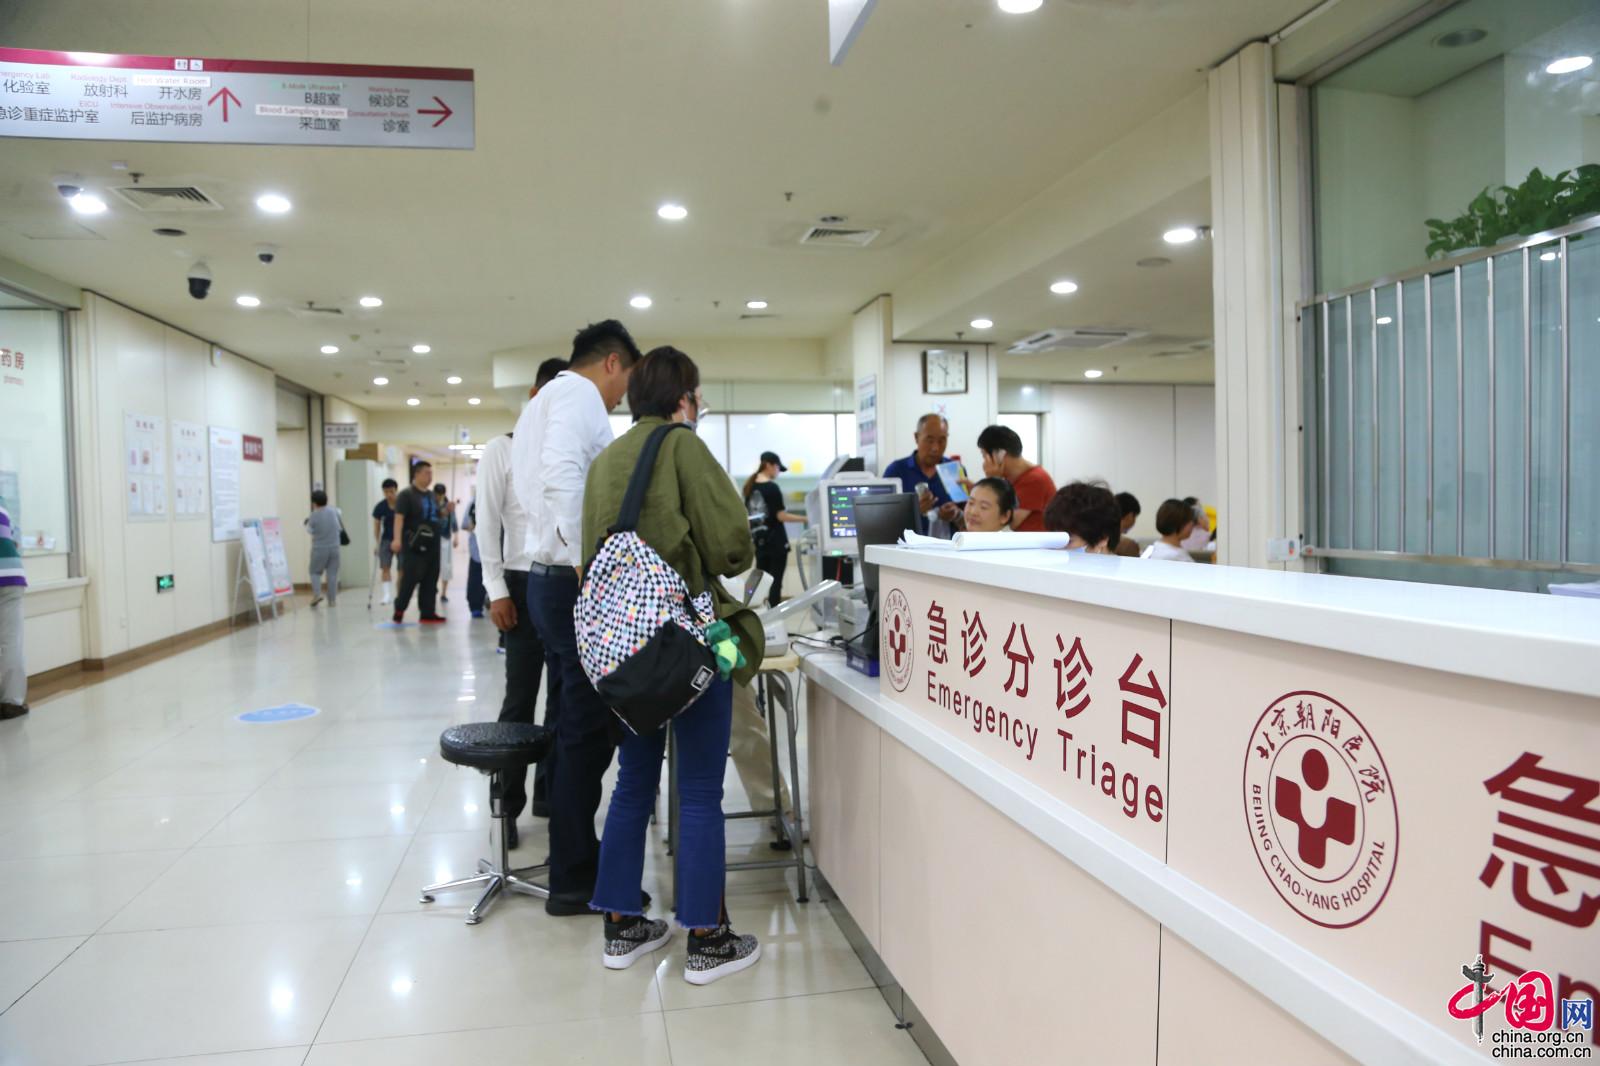 北京市属医院“急诊分级”专题媒体沟通会现场。中国网记者胡俊 摄